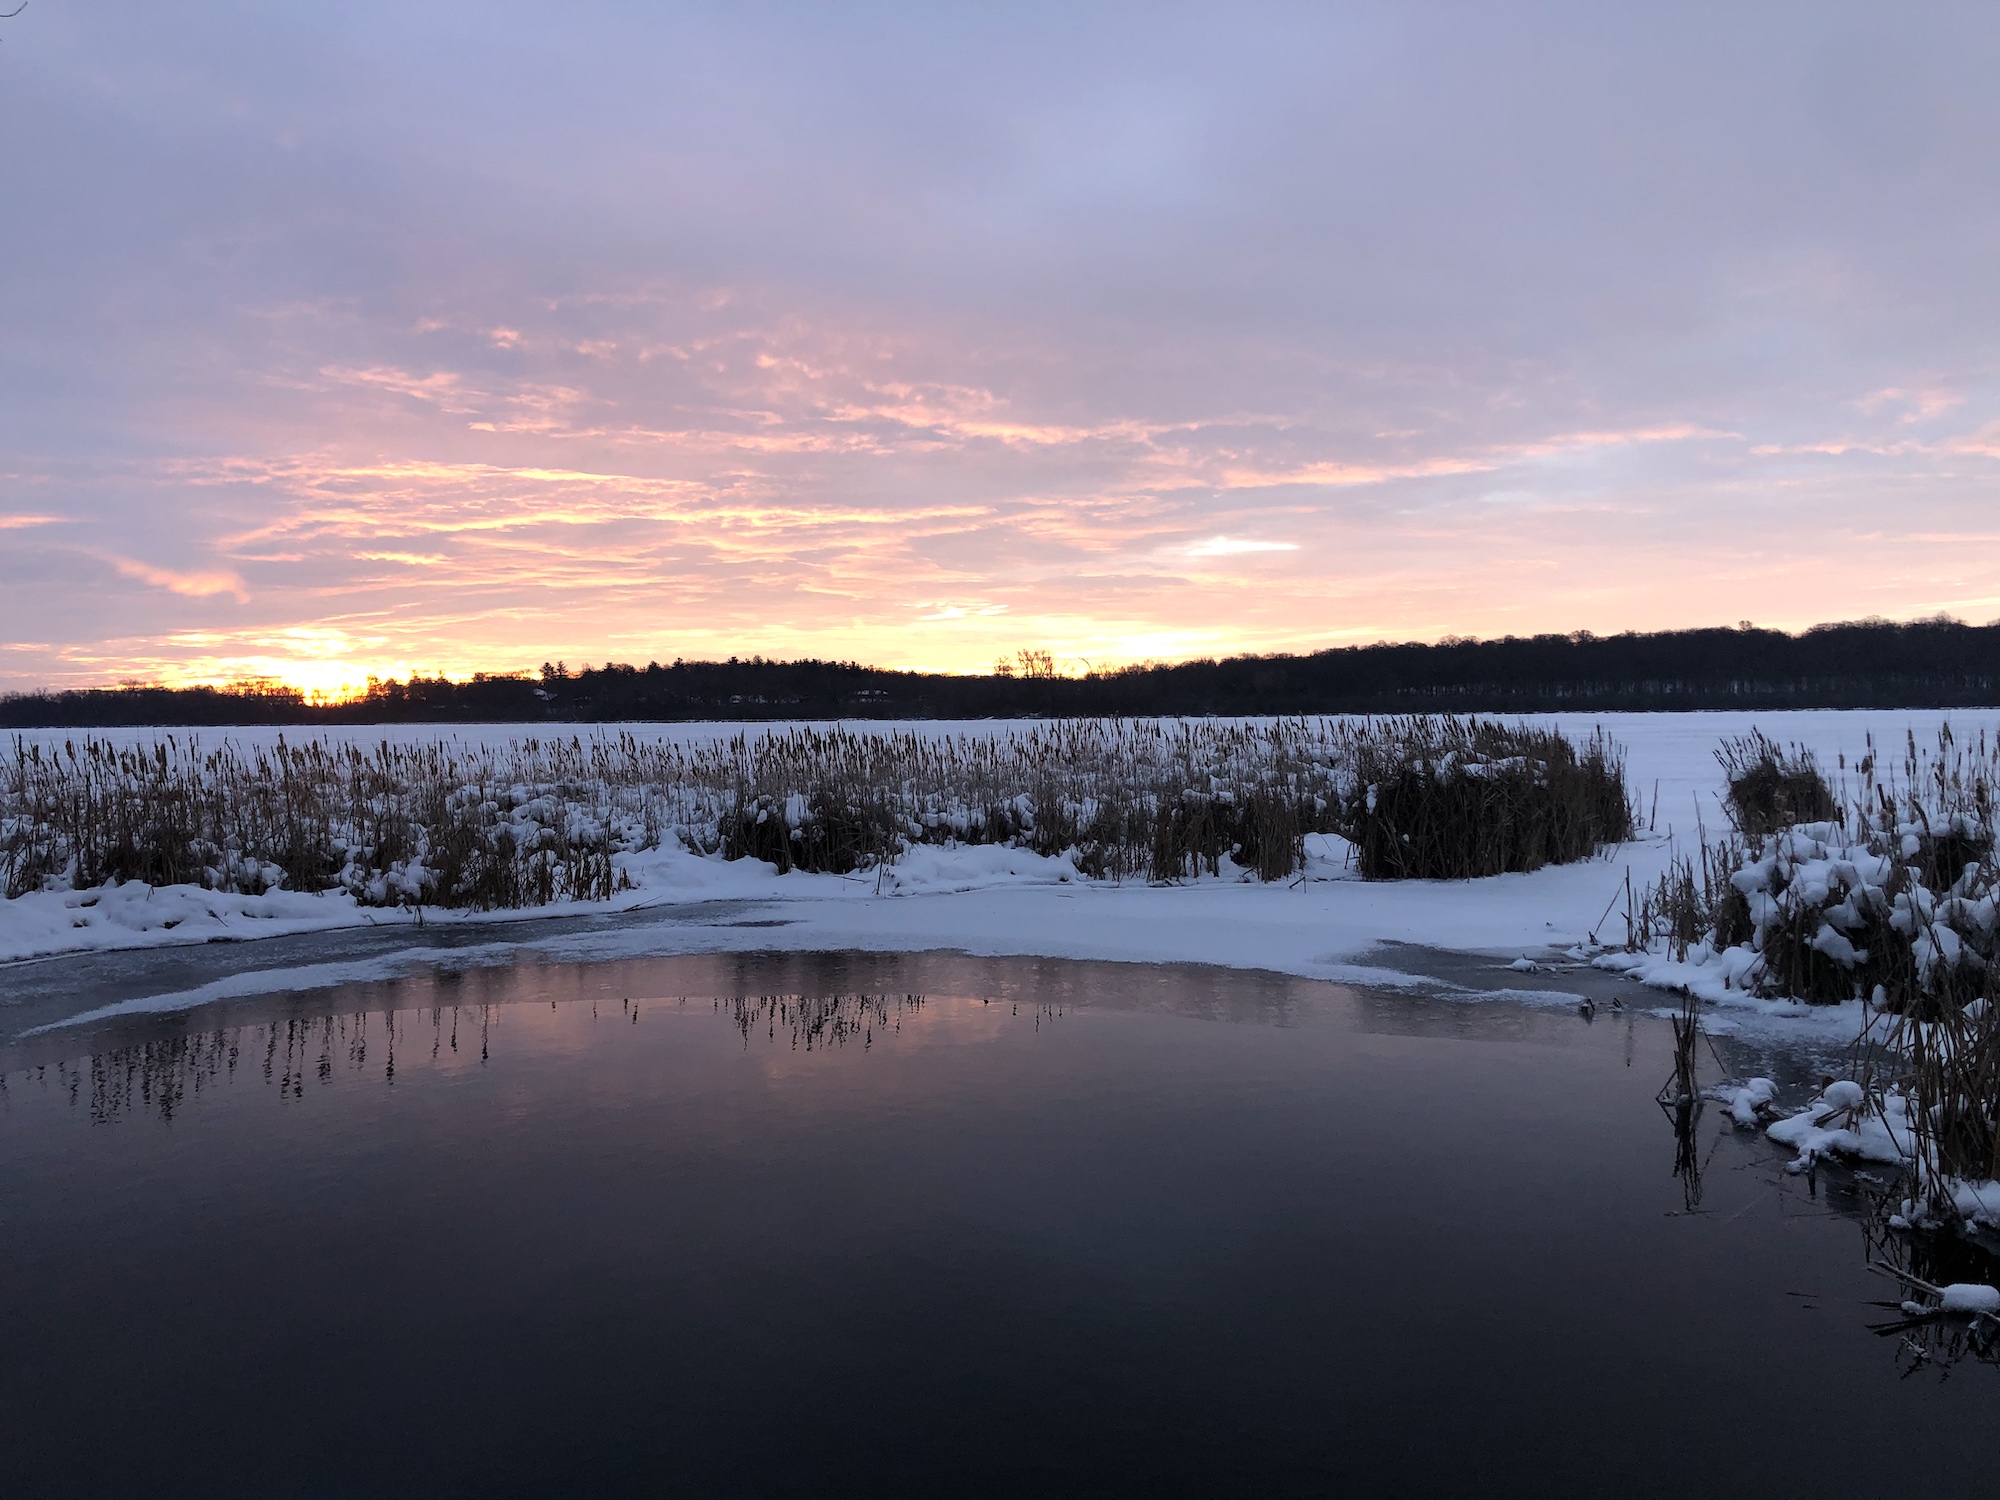 Lake Wingra cattails at sunrise on December 27, 2022.